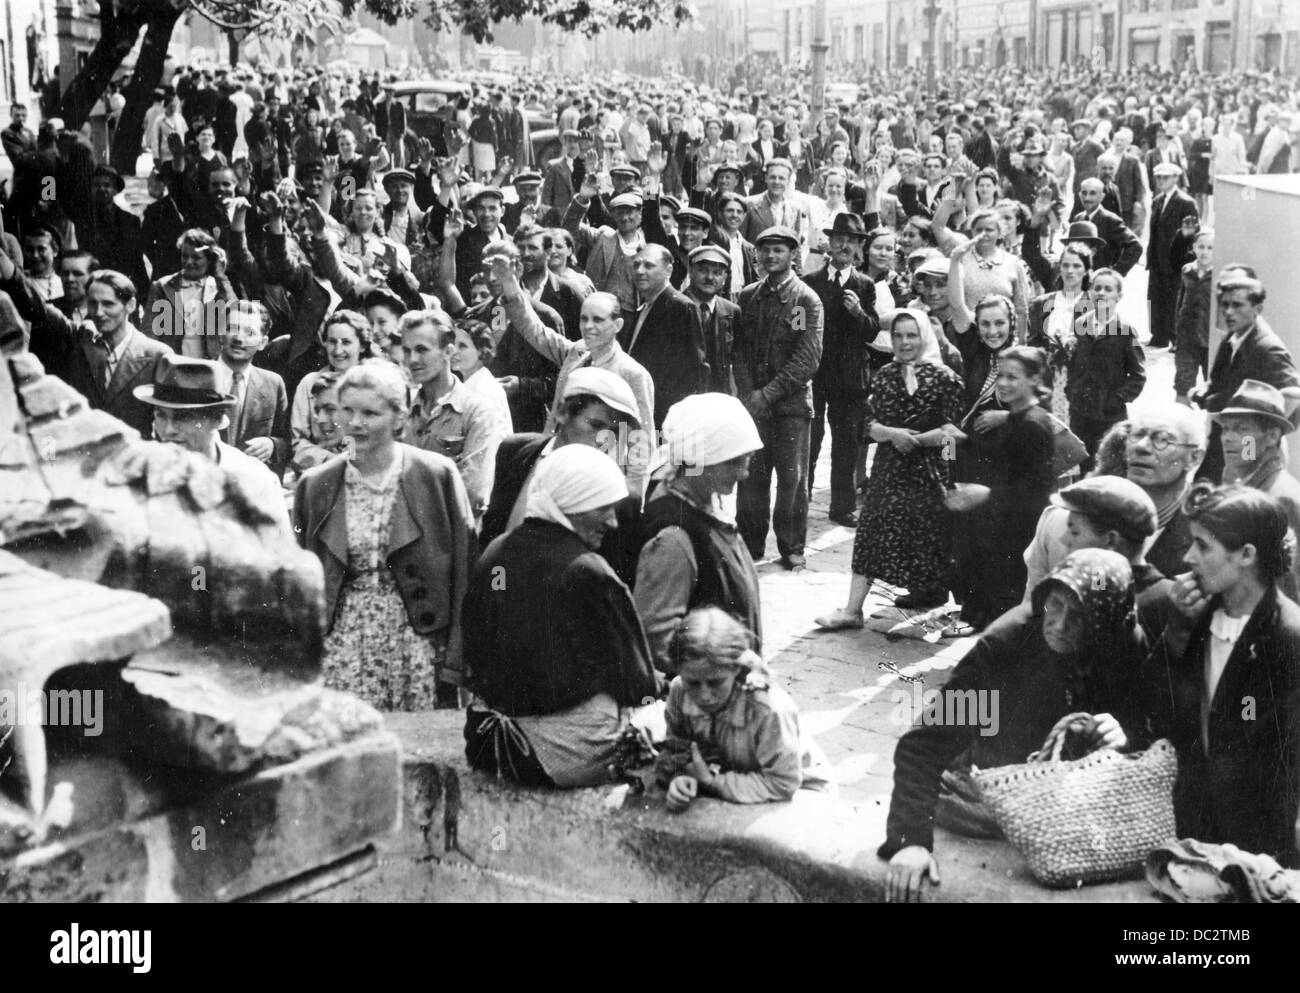 La Propaganda nazista! Sul retro della foto si legge: "La popolazione di Lviv accoglie favorevolmente le truppe tedesche con entusiasmo. Dopo lotte ruvida, Leopoli fu catturato dalle truppe tedesche. Persone, nascosti in scantinati, versata nelle strade per accogliere l'arrivo dei soldati tedeschi. La foto mostra un luogo a Lviv dove la gente ha ottenuto insieme, accogliendo i soldati tedeschi. ' Immagine dal fronte orientale, Ucraina 07/04/1941. L'attacco intraprese dall'esercito tedesco in Unione Sovietica ha avuto luogo il 06/22/1941 sotto il nome di codice "Operazione Barbarossa". Prima ha accolto con favore e sostenuto dalla popolazione locale come Foto Stock